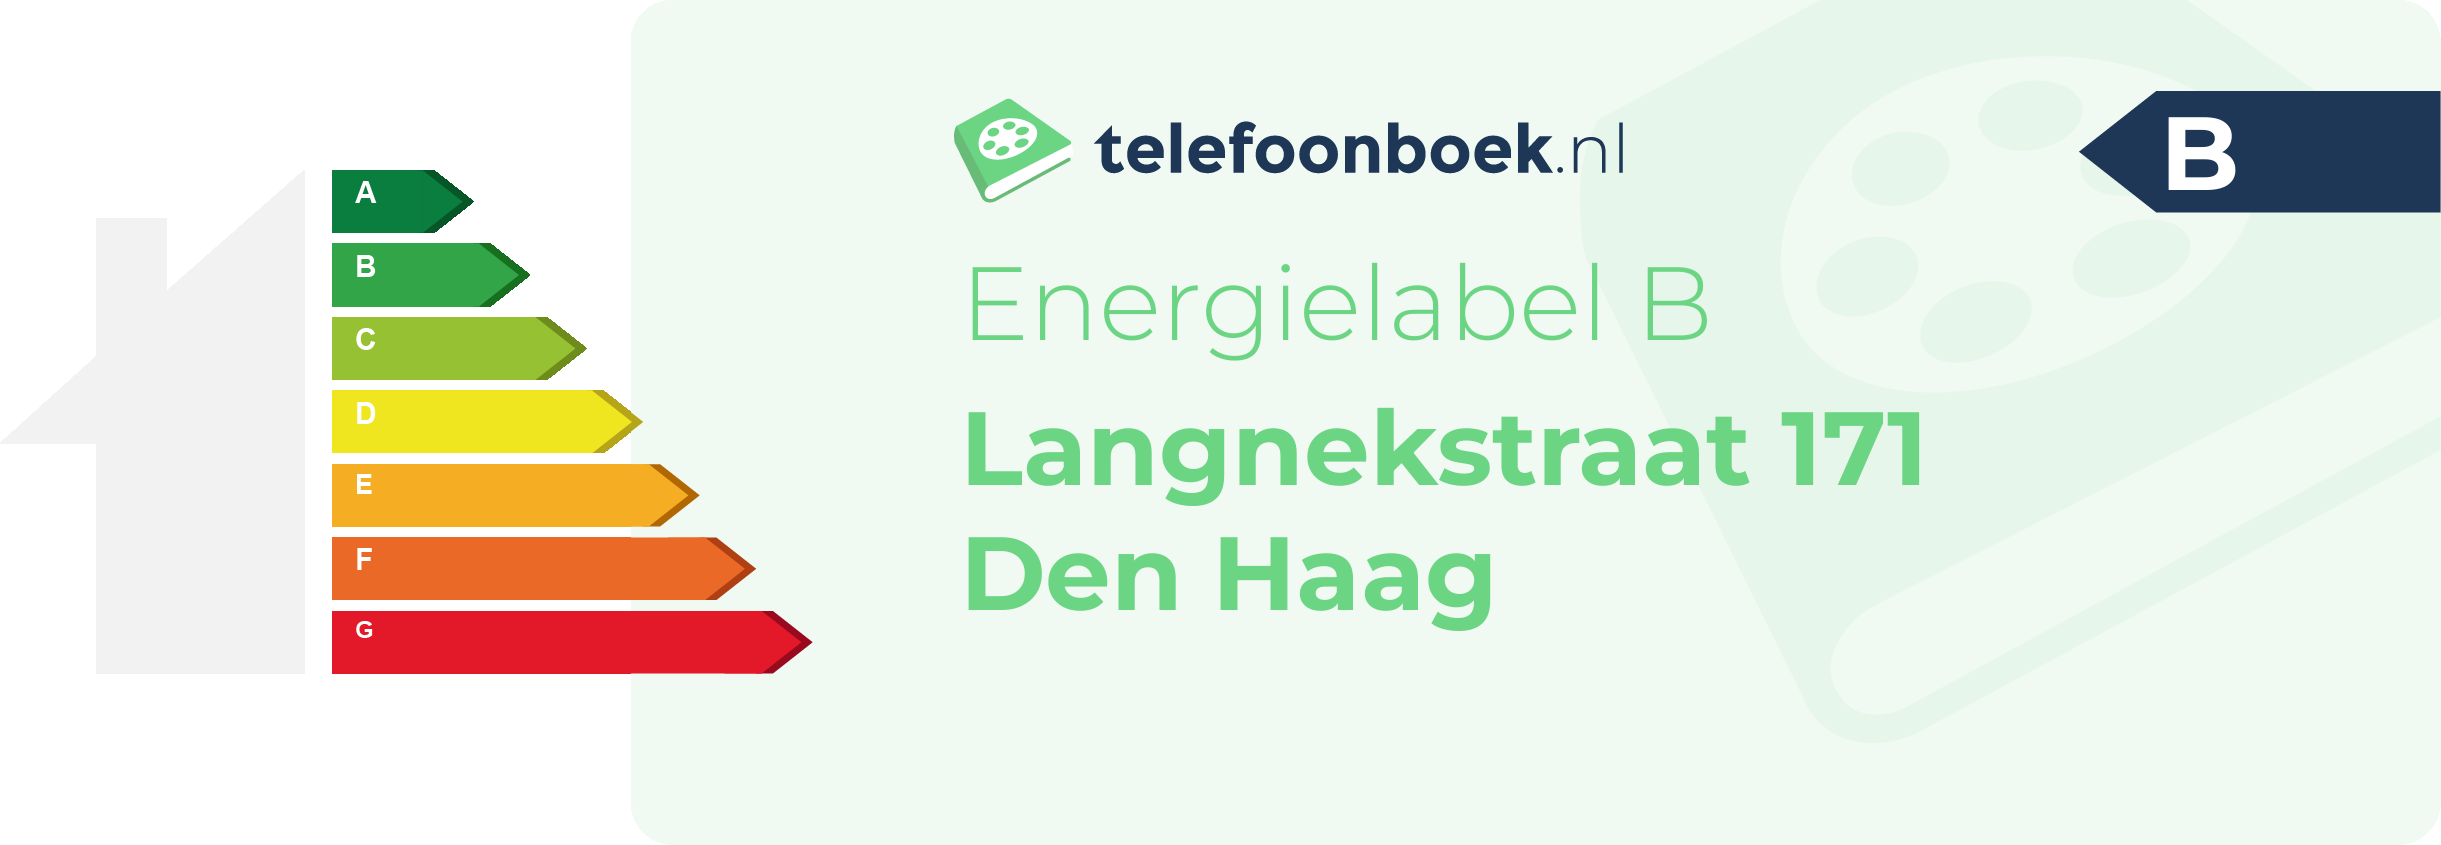 Energielabel Langnekstraat 171 Den Haag